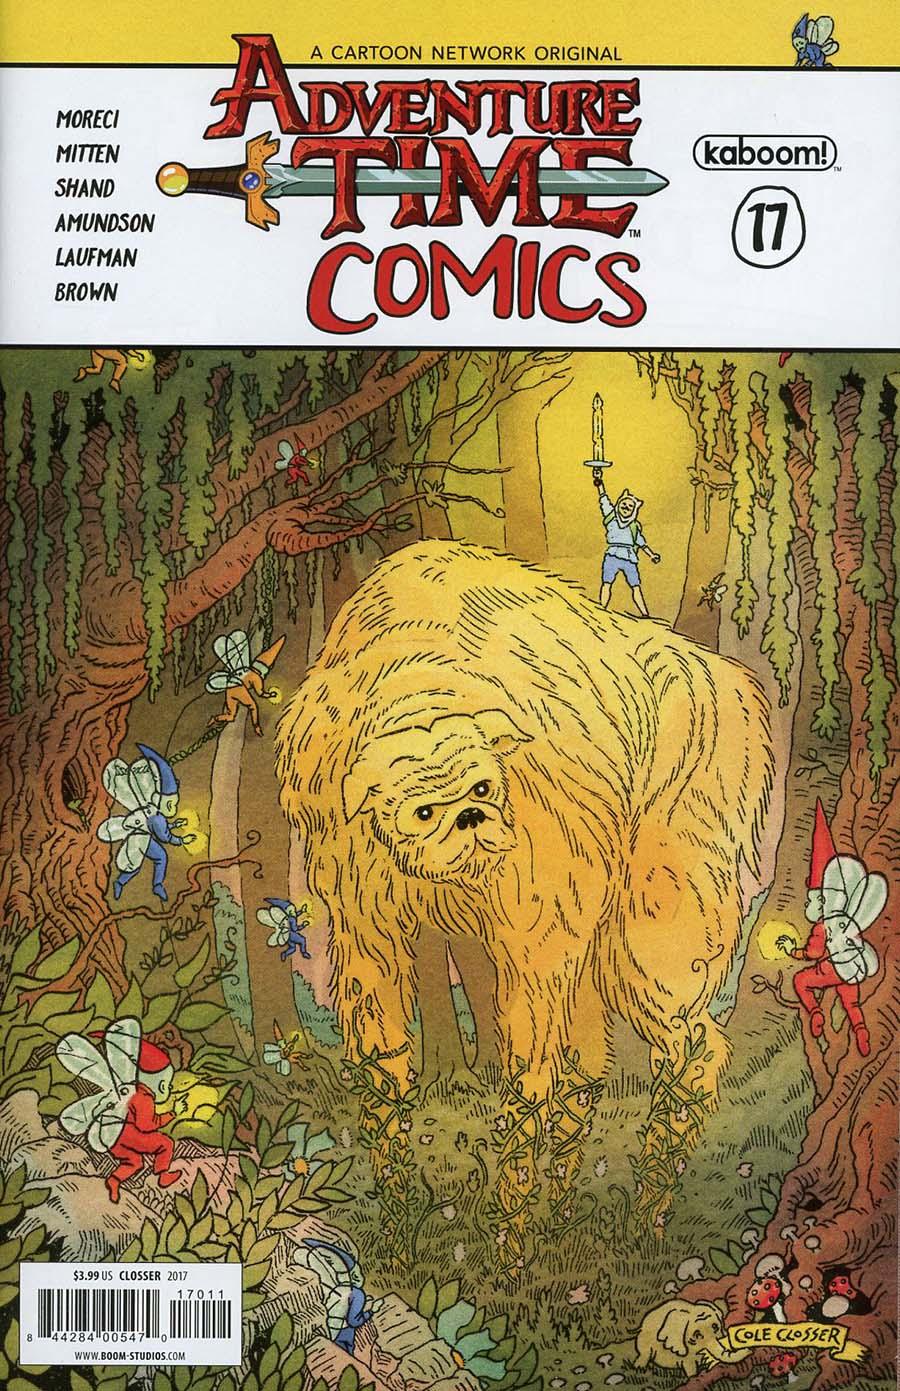 Adventure Time Comics Vol. 1 #17